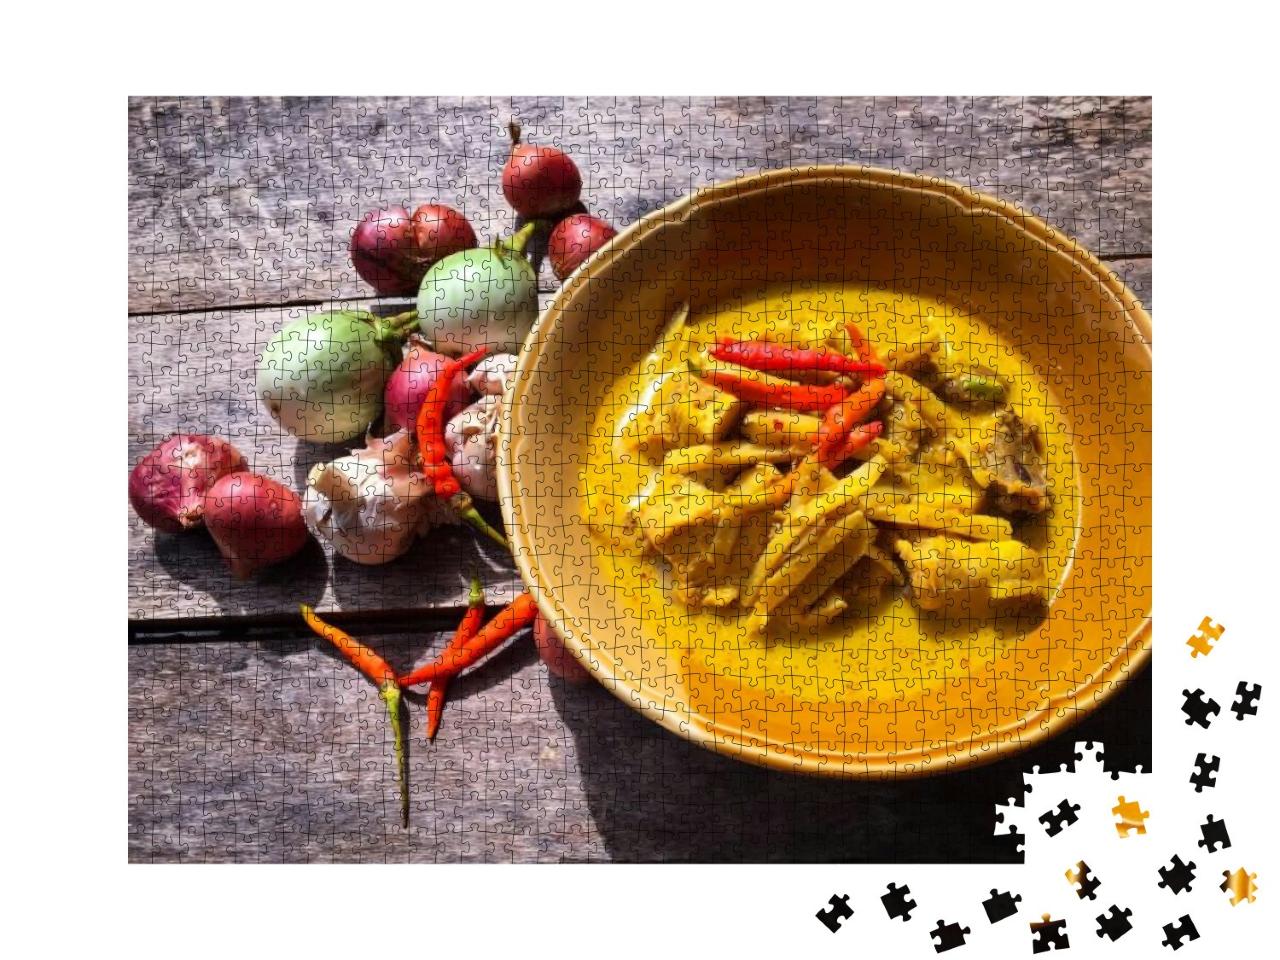 Puzzle 1000 Teile „Kokosnuss-Curry-Huhn mit Bambussprossen, Essen, Thailand“